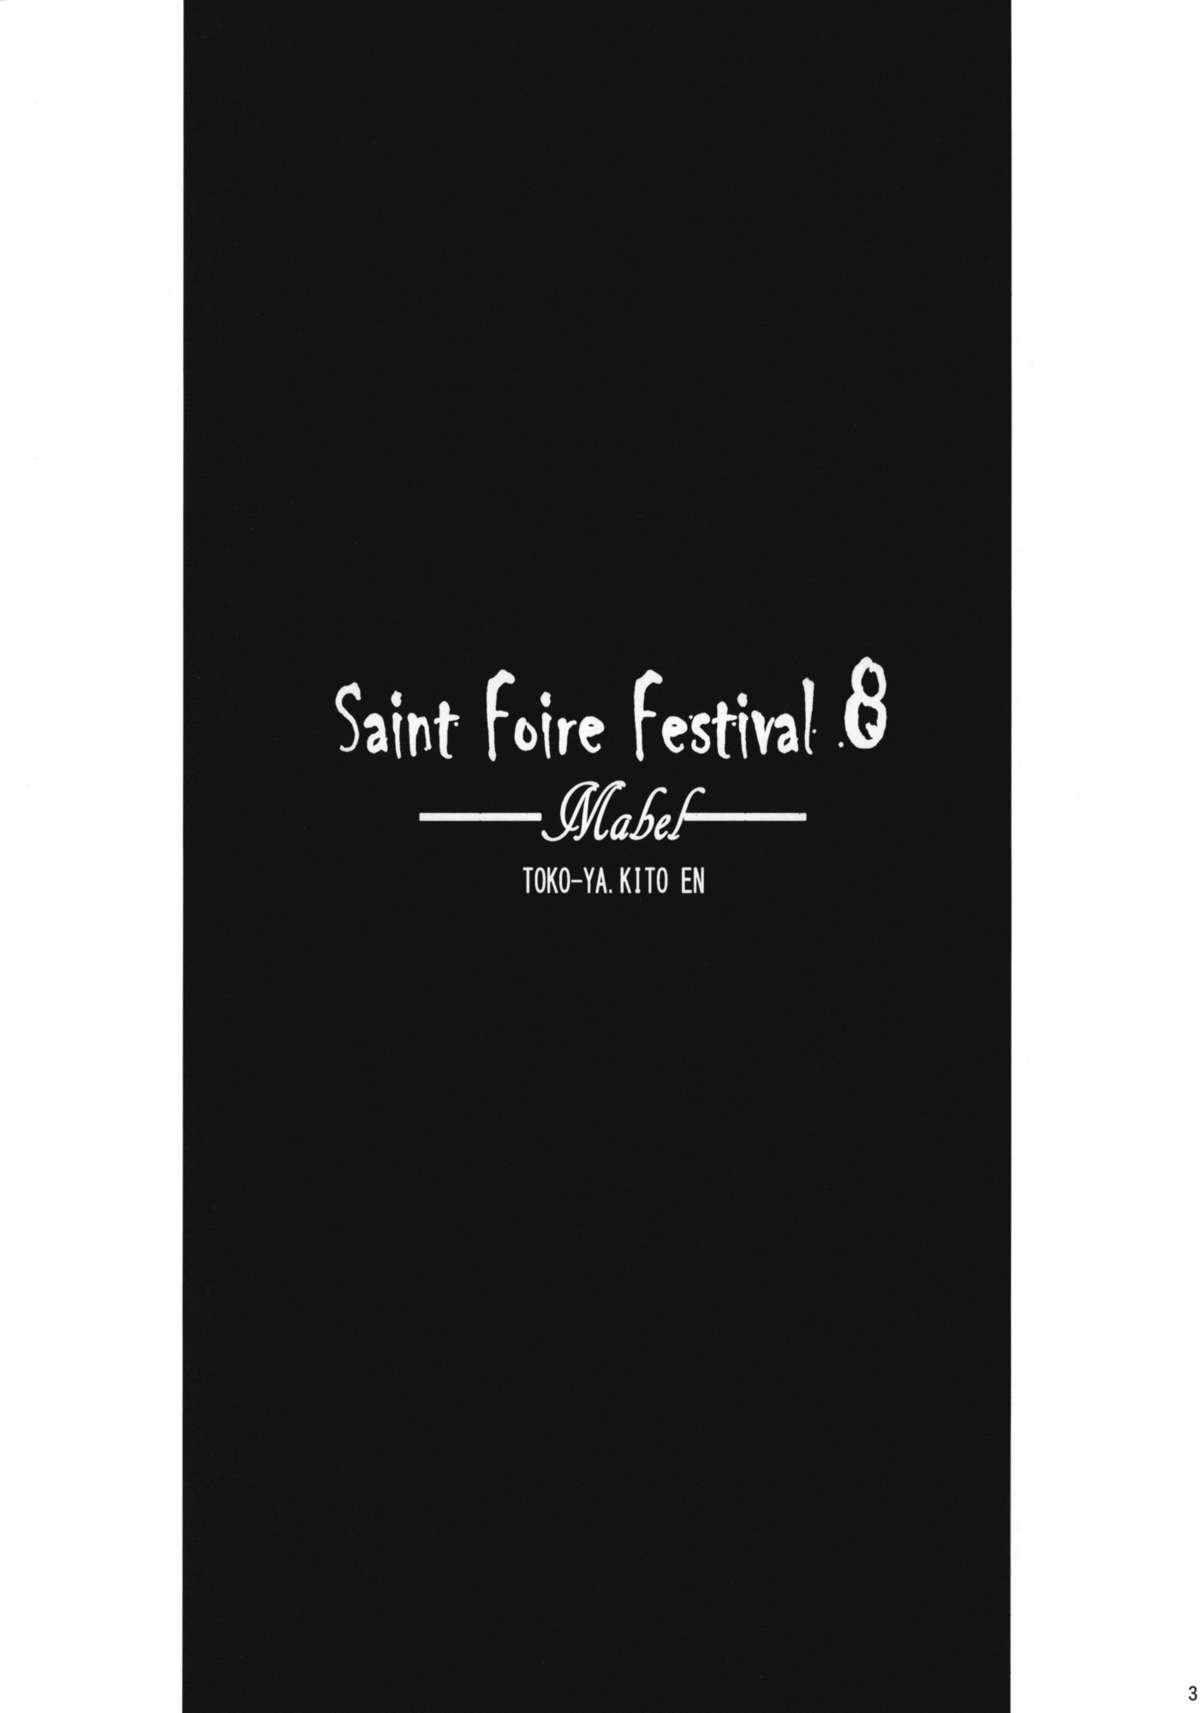 Saint Foire Festival 8 Mabel + Paper 1